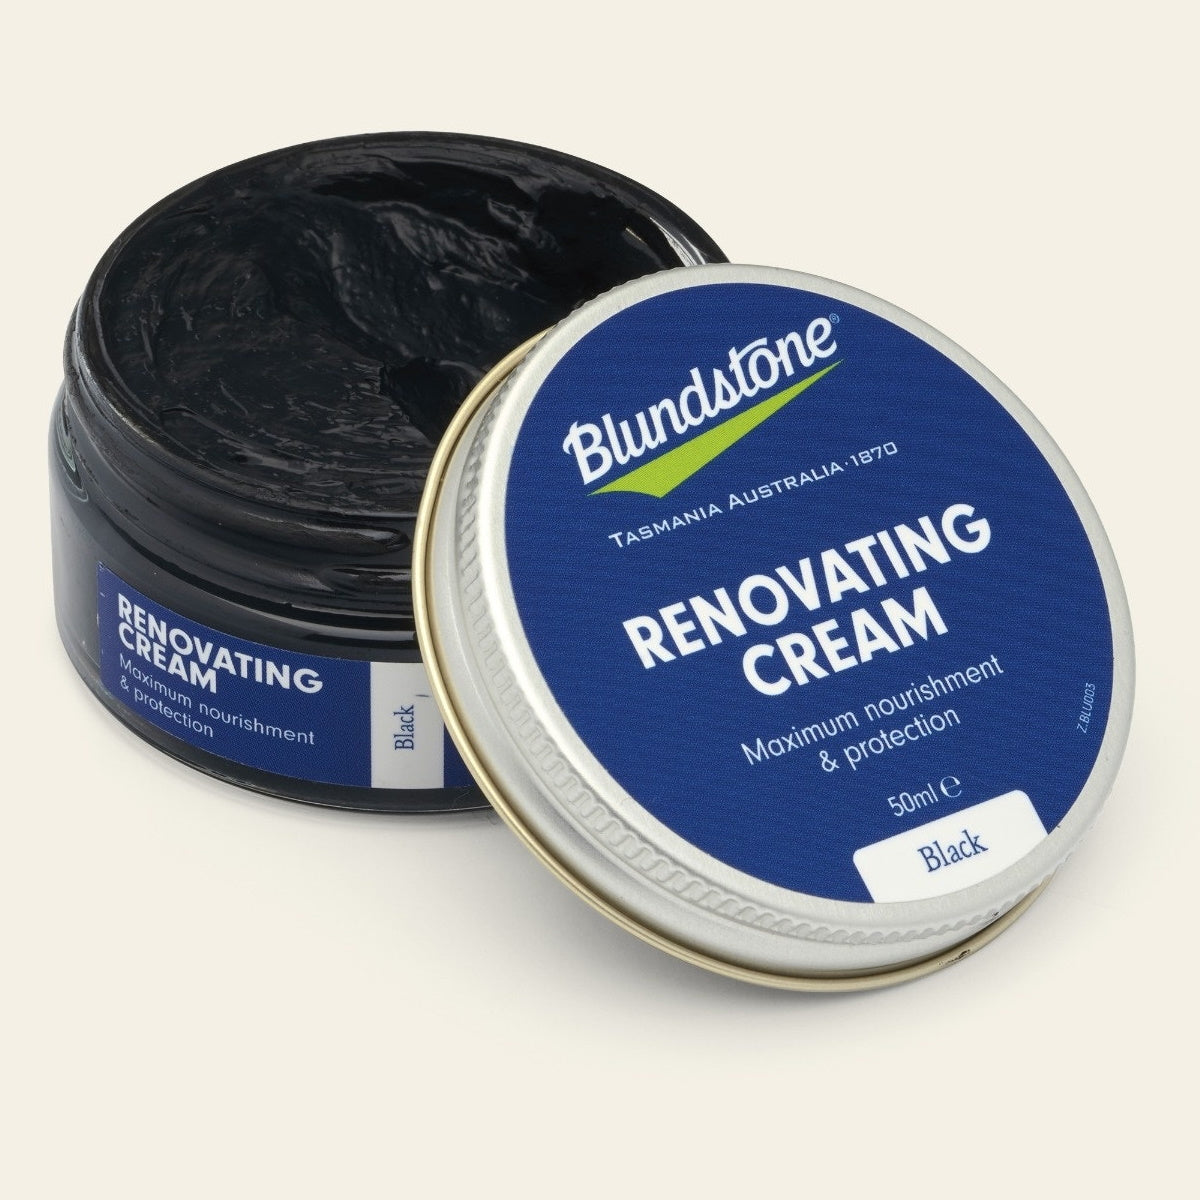 Blundstone Renovating Cream in Black